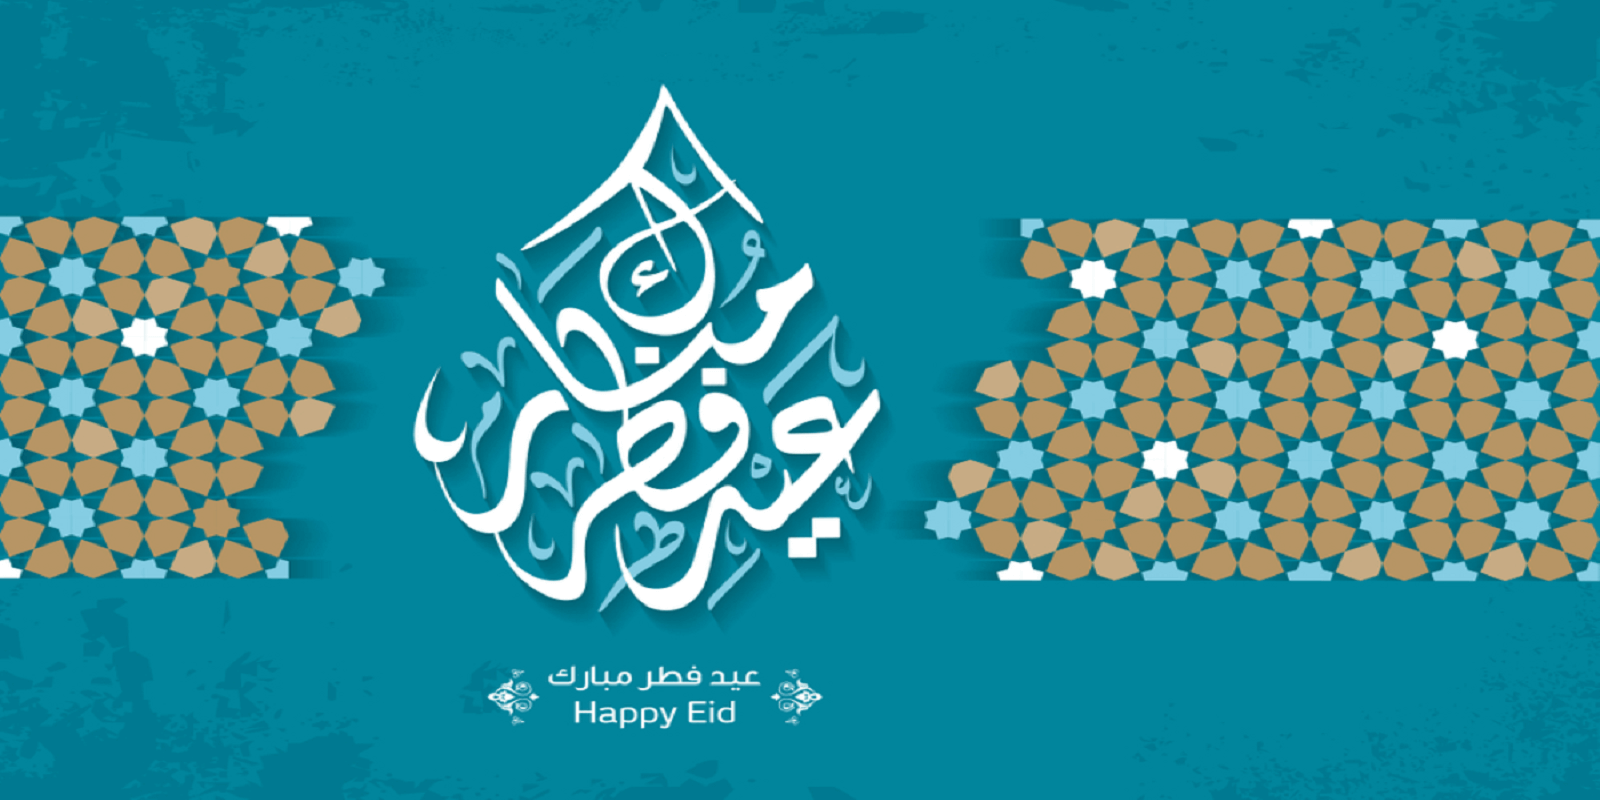 Happy eid images